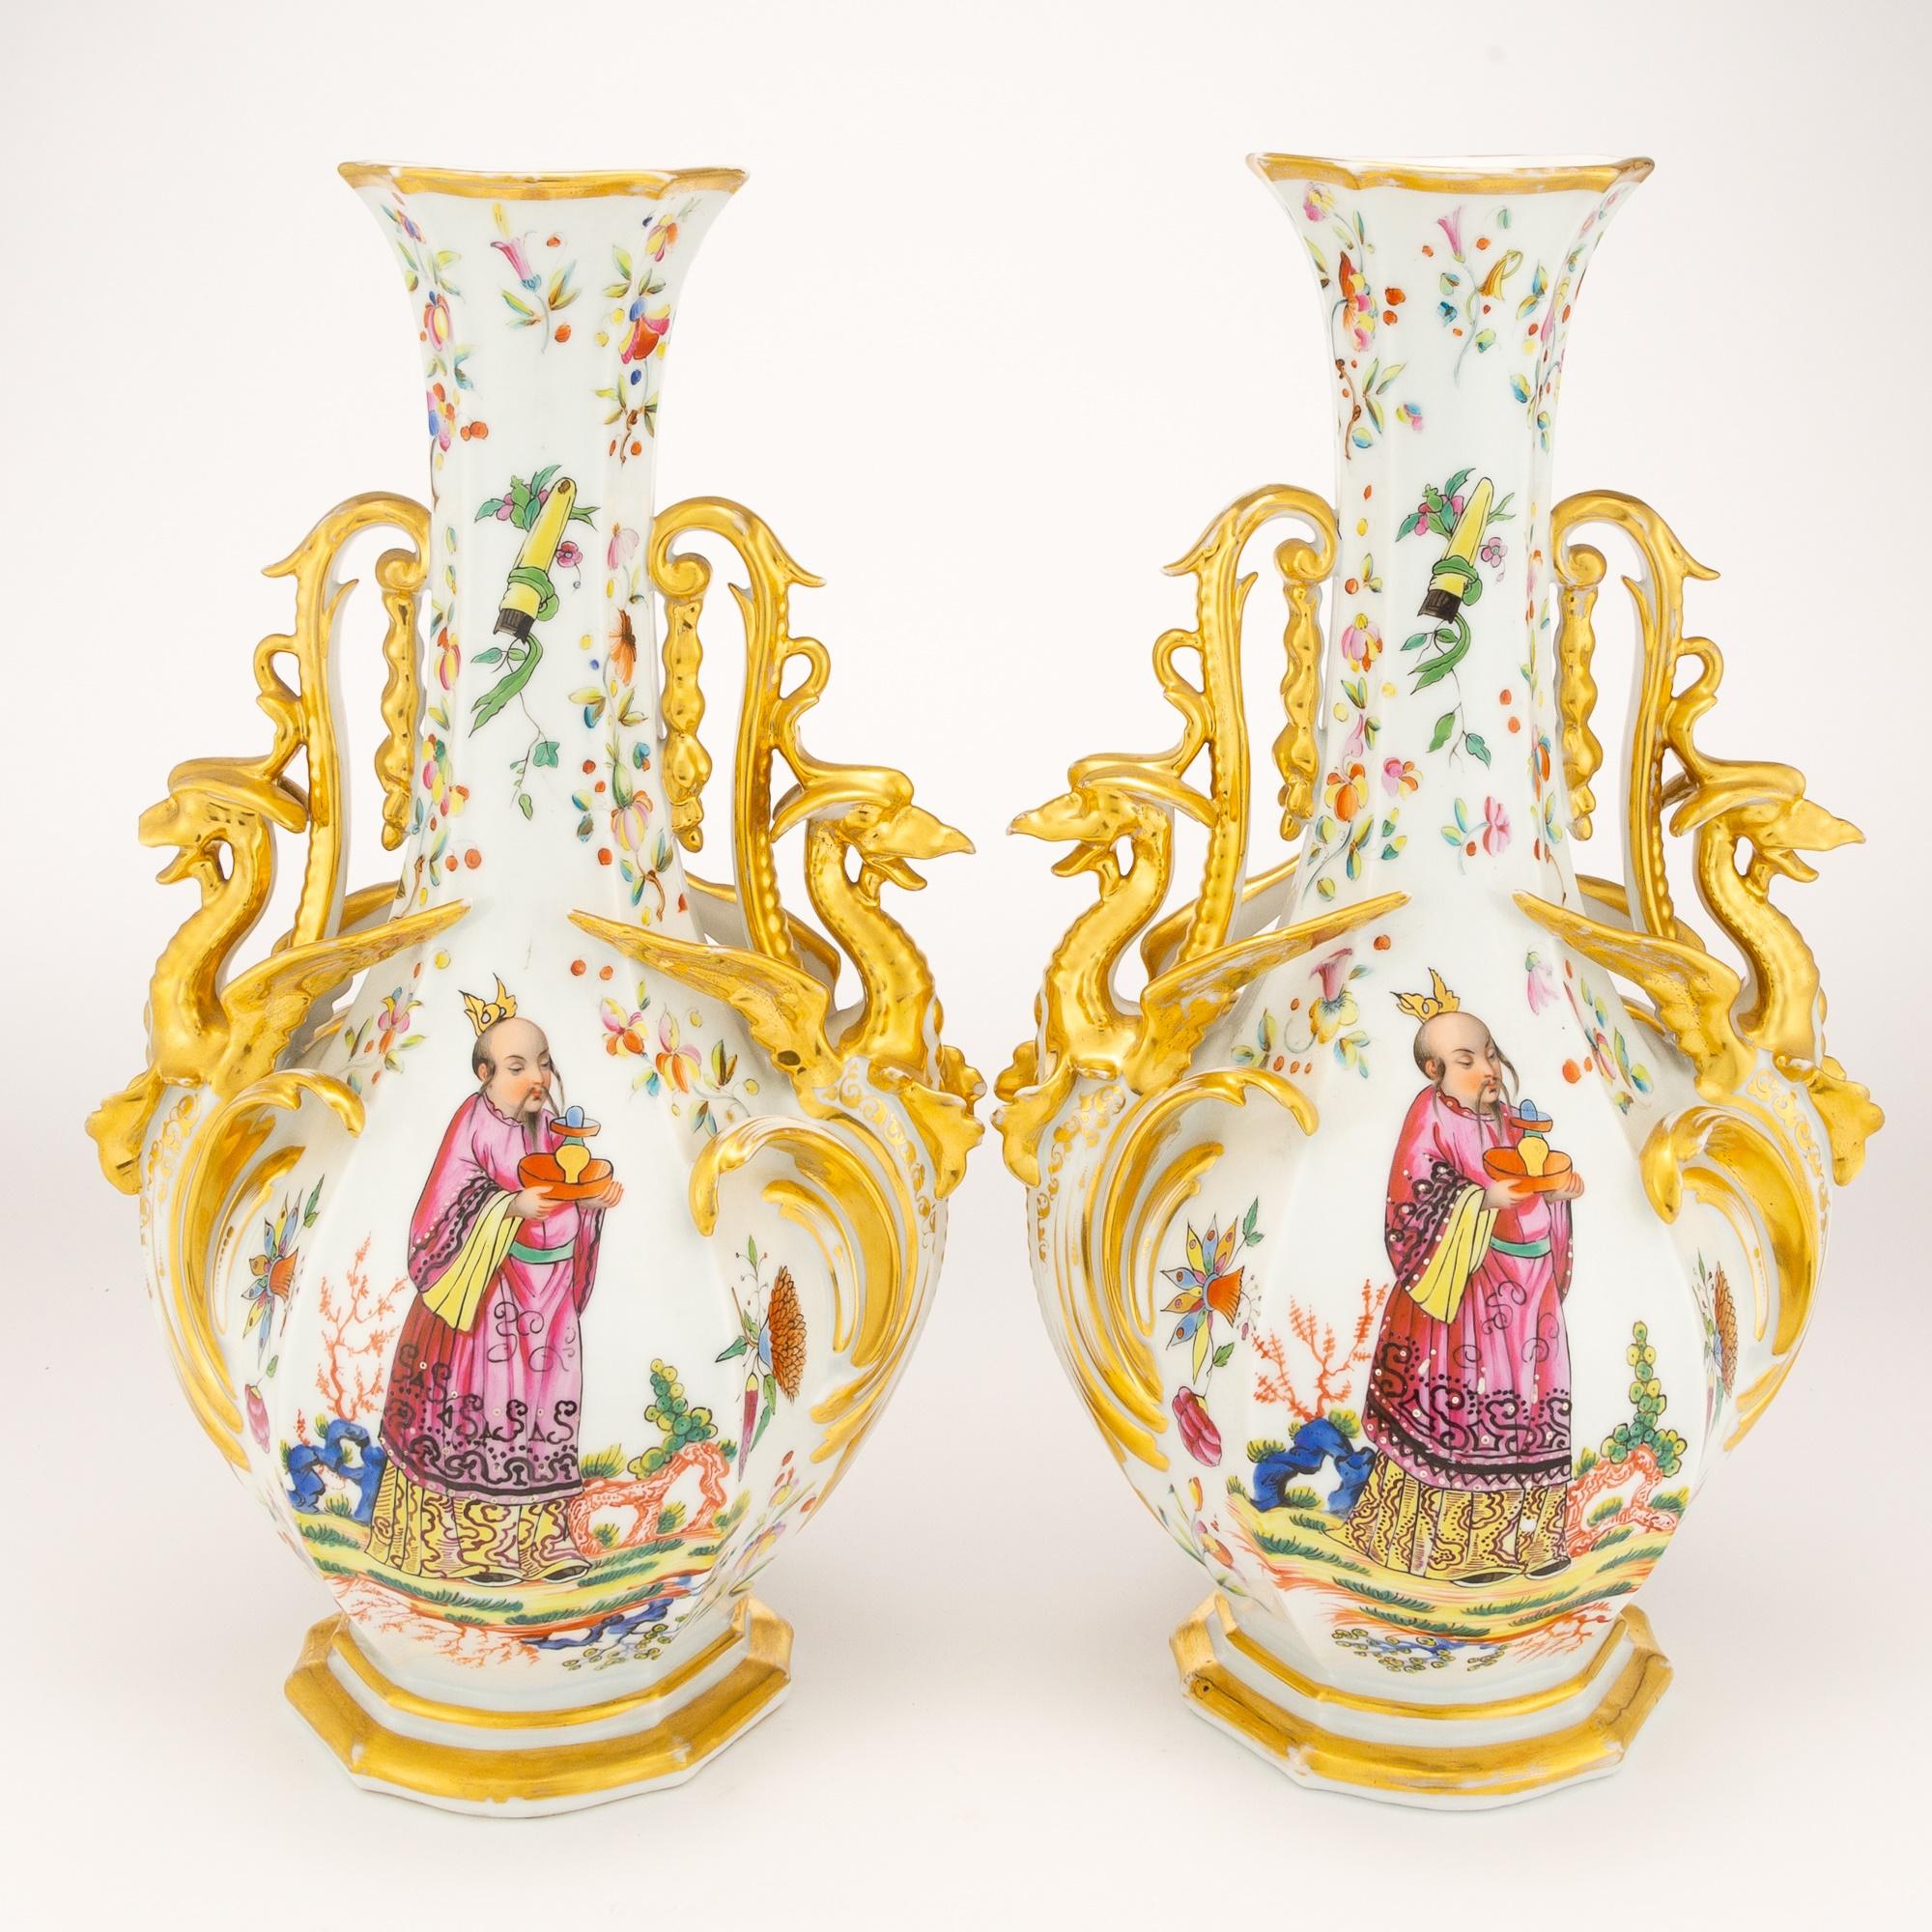 Verschönern Sie Ihren Raum mit der zeitlosen Eleganz des Paares vergoldeter und polychromer Porzellanvasen aus dem späten 19. Jede mit viel Liebe zum Detail gefertigte Vase hat eine Flaschenform mit schön getäfelten Seiten und Griffen in